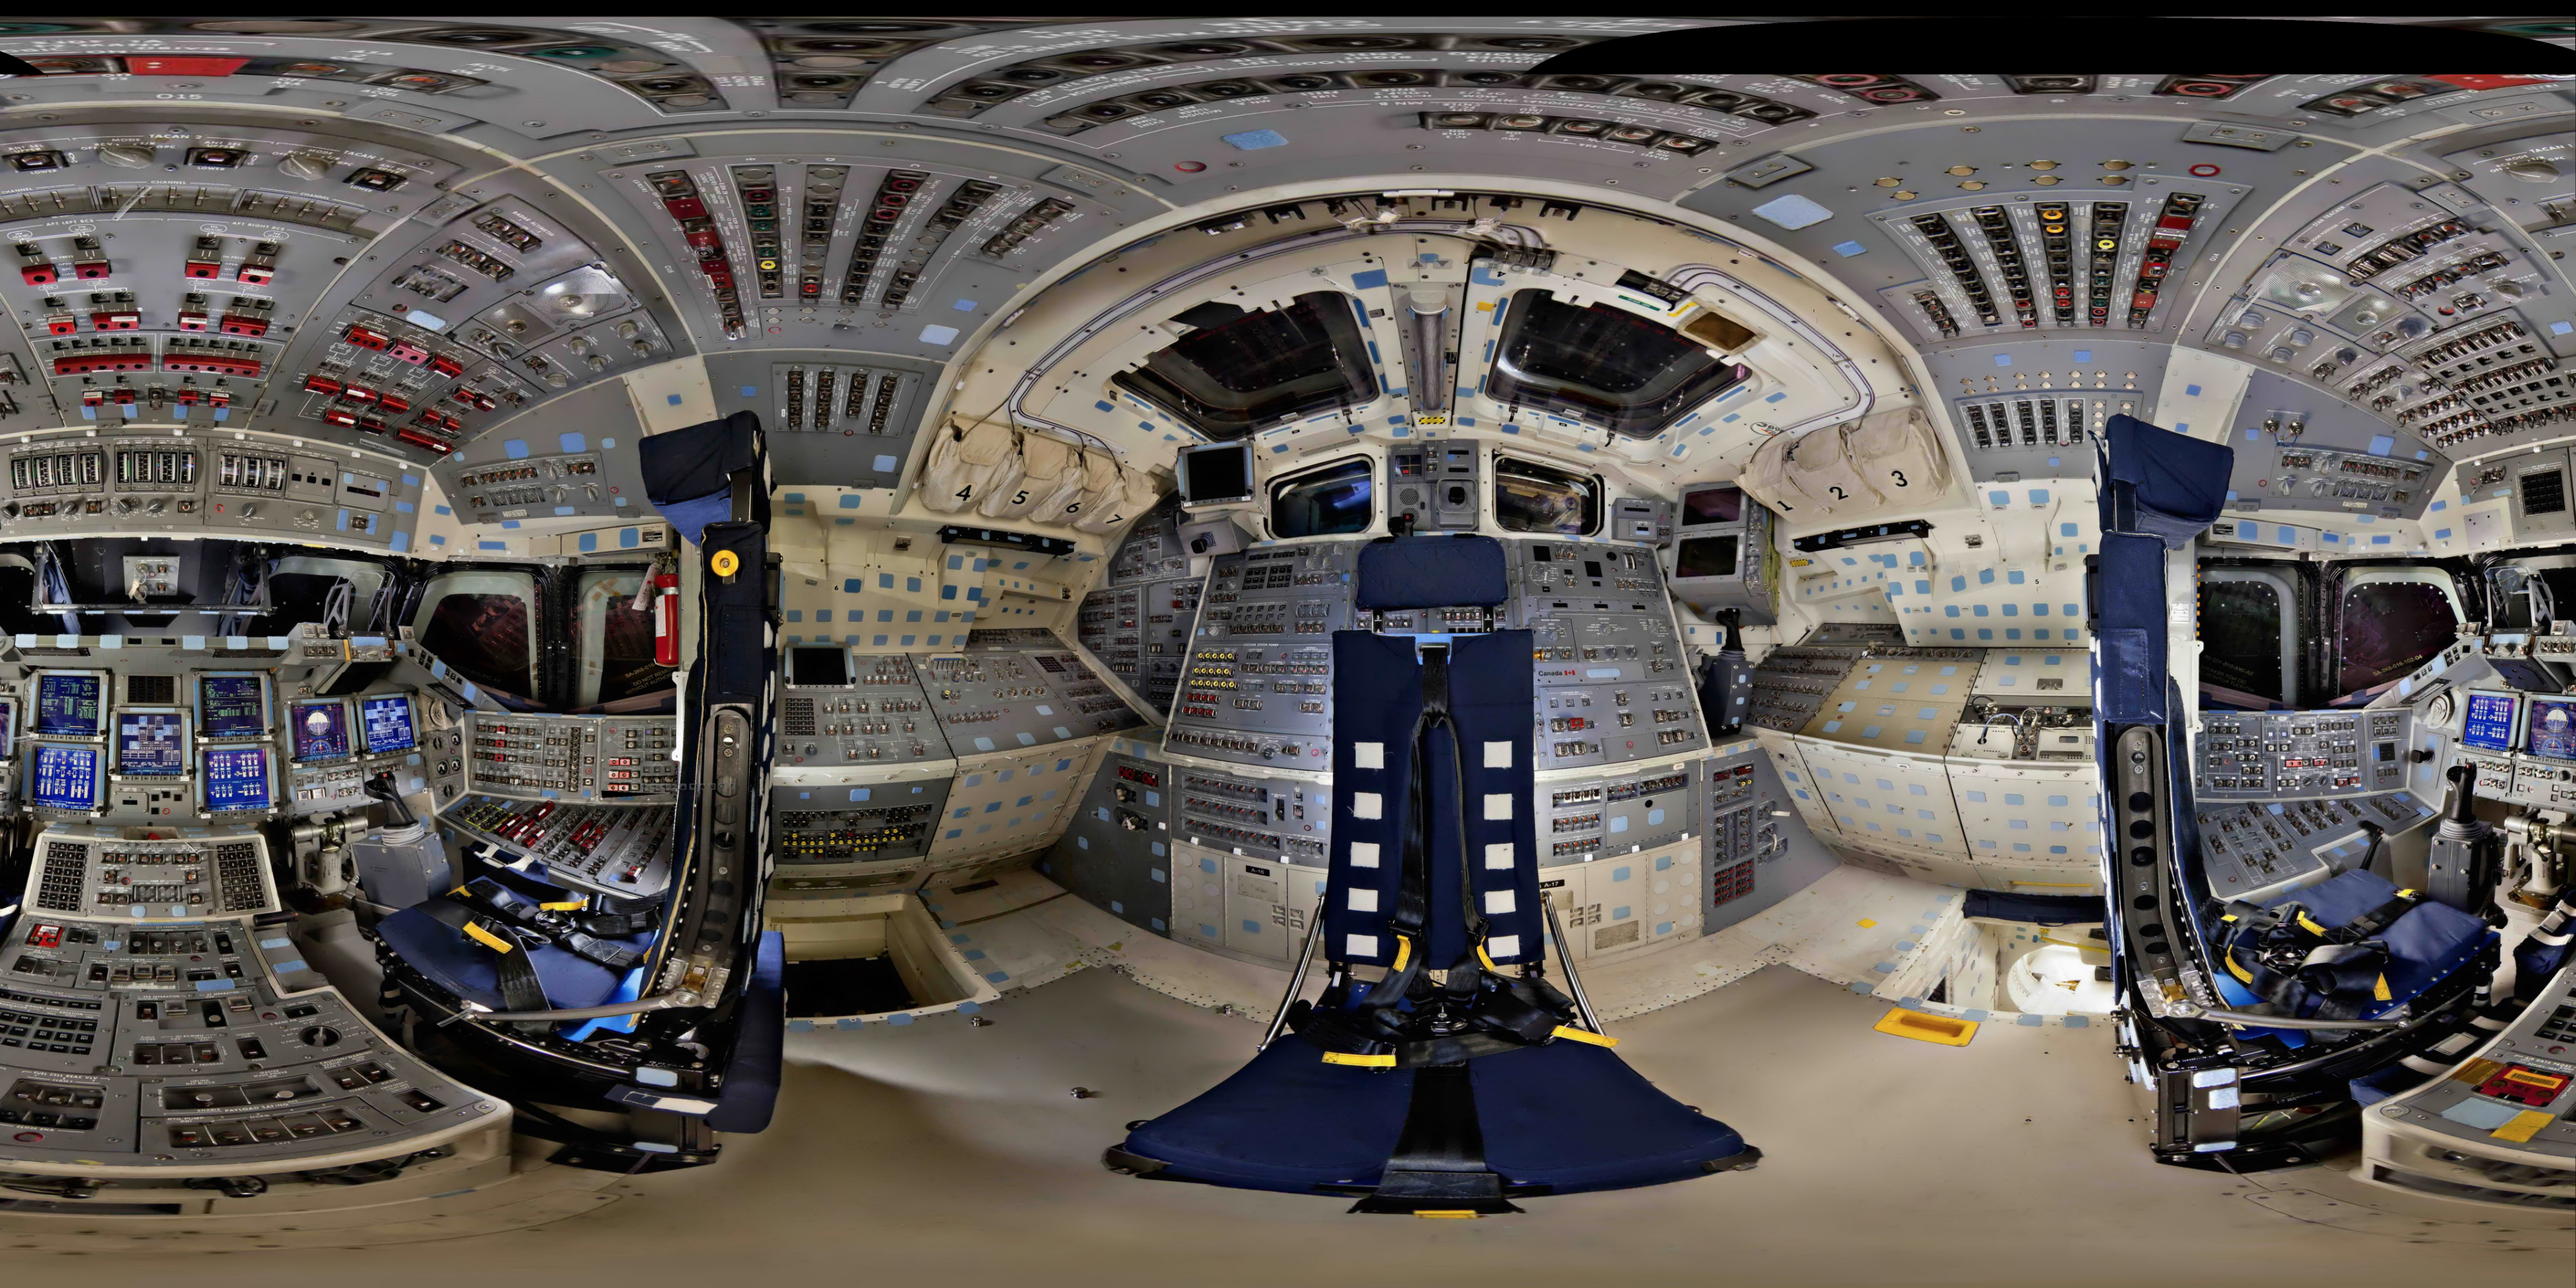 spacecraft flight deck